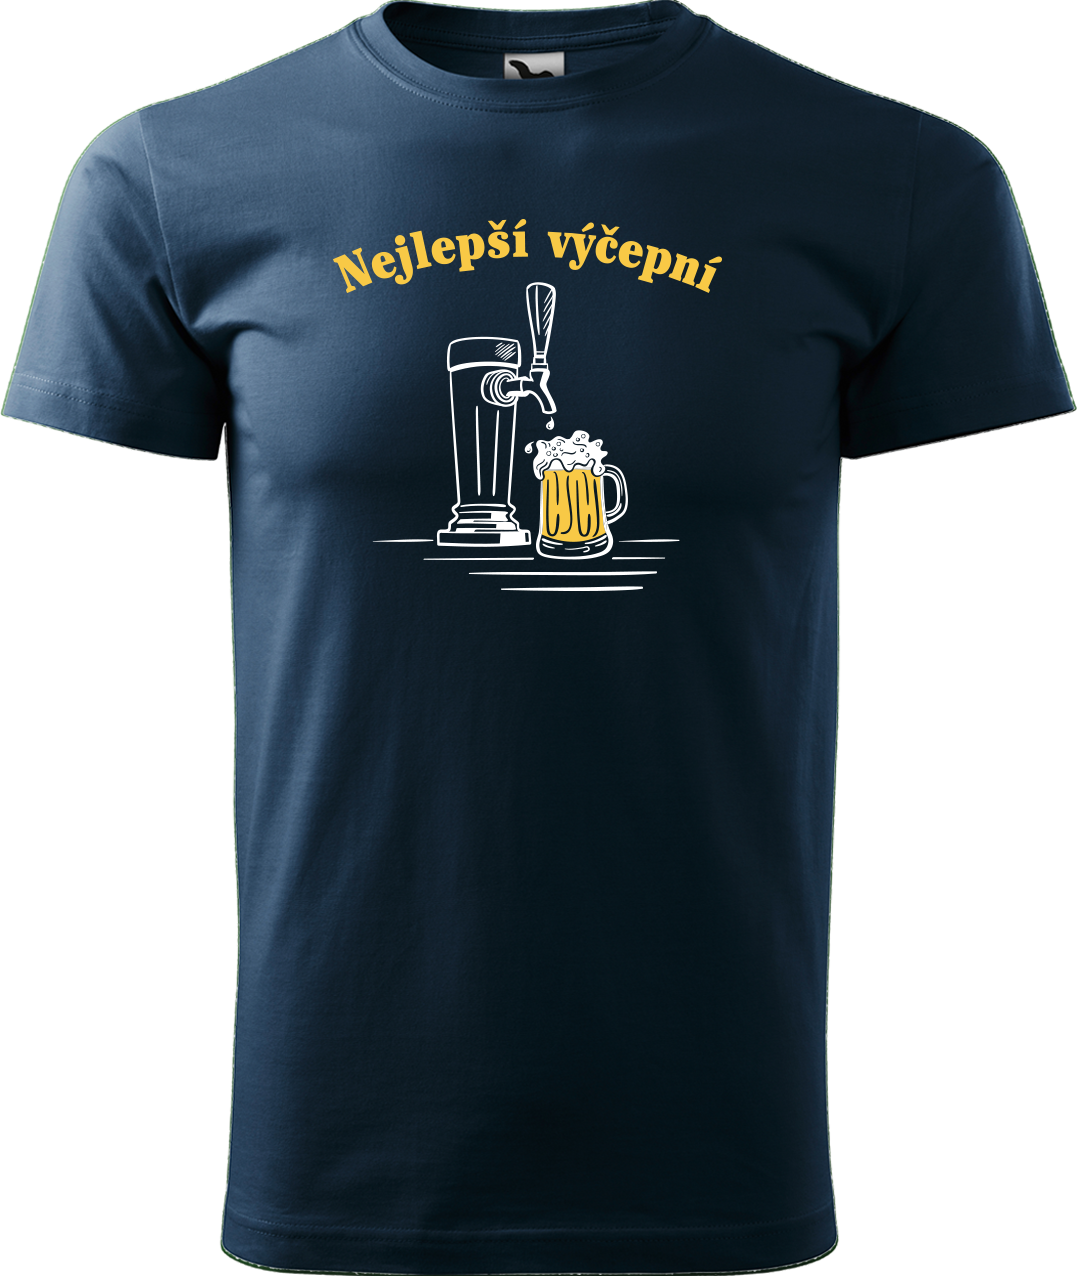 Pivní tričko - Nejlepší hospodskej Velikost: L, Barva: Námořní modrá (02)